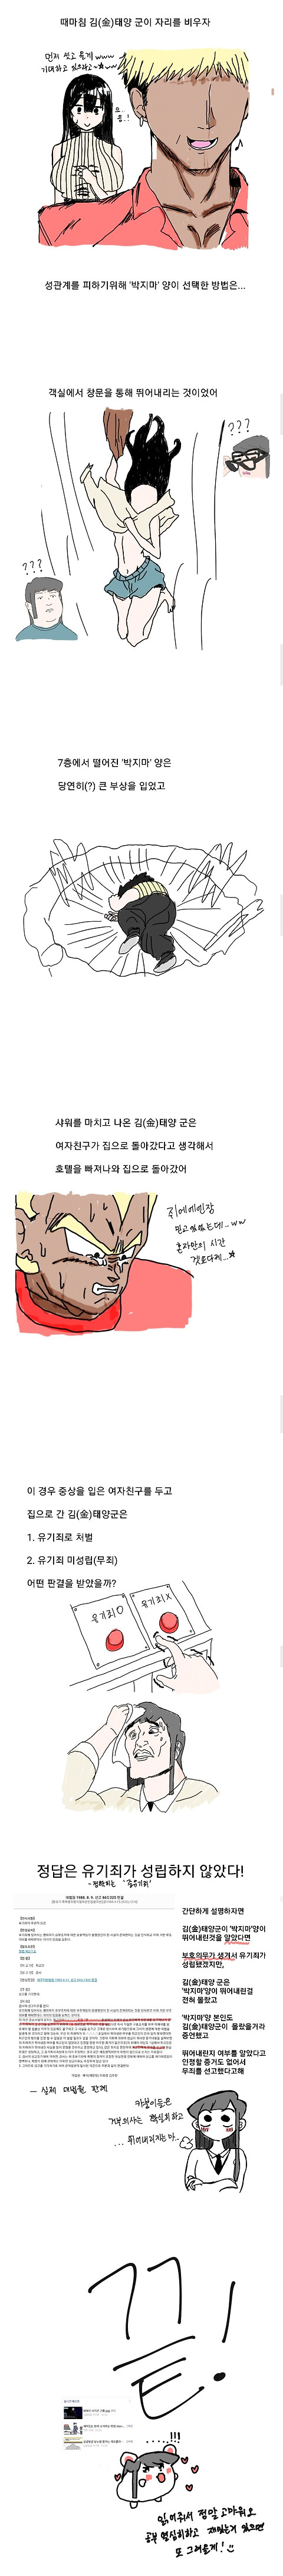 ㅇㅎ) 재미있는 판례 소개하는 만화 2편.Manhwa